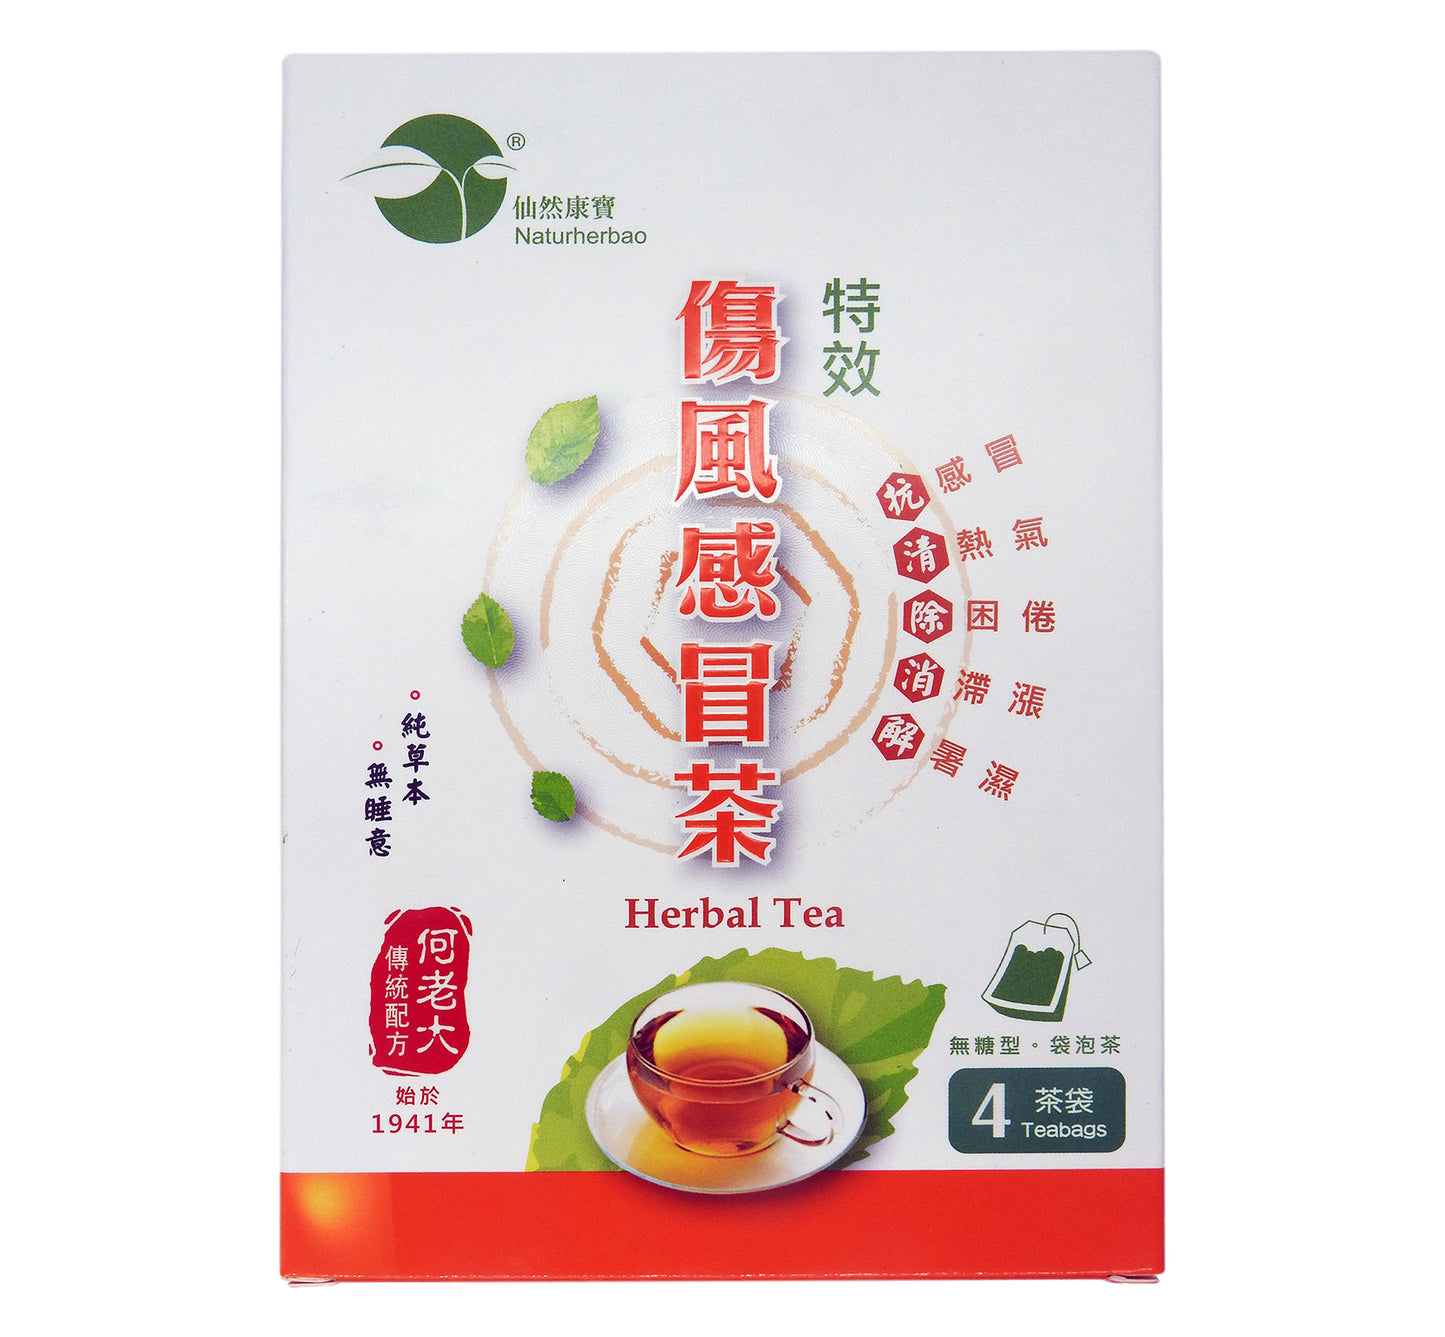 仙然康寶 - 特效傷風感冒茶 [何老大傳統配方] 4茶袋裝 #29977